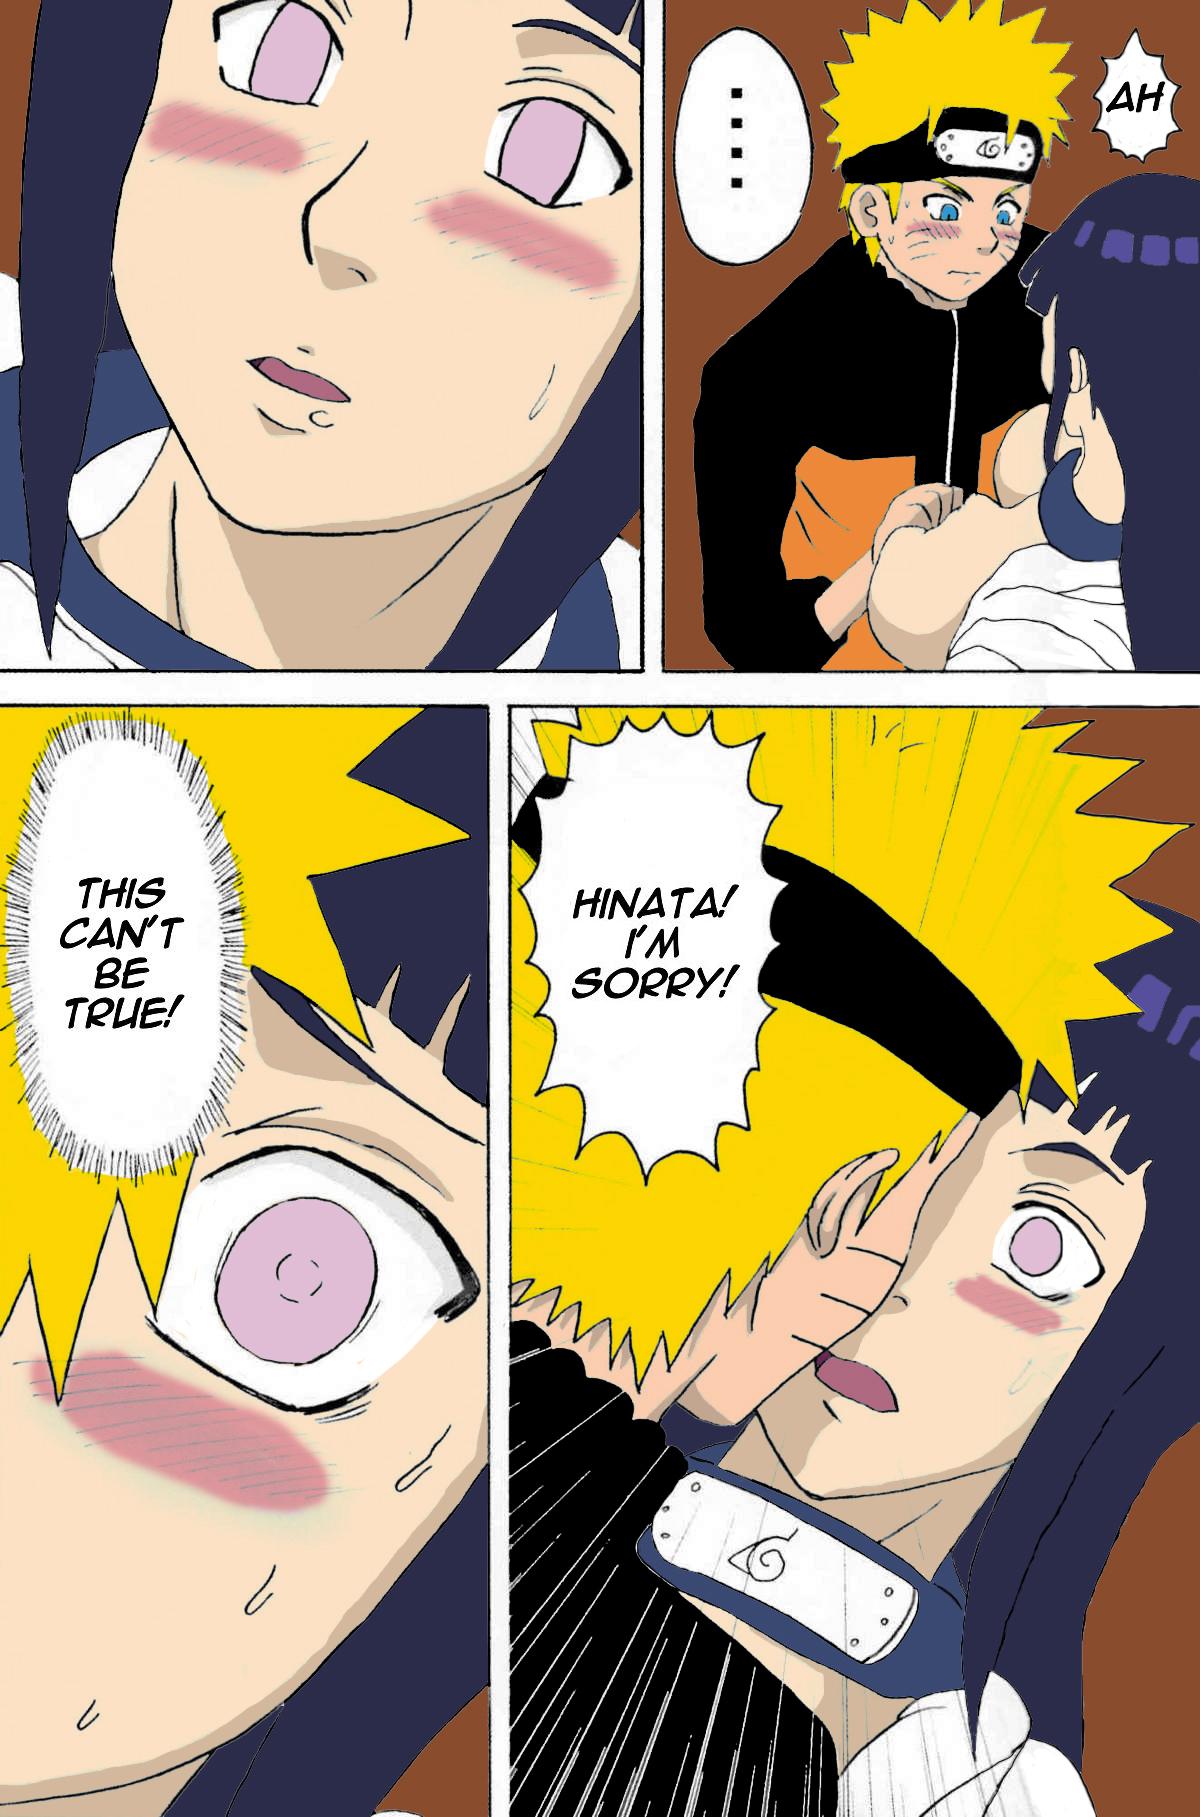 19yo Hinata Ganbaru! Hinata Fight - Naruto Bitch - Page 8